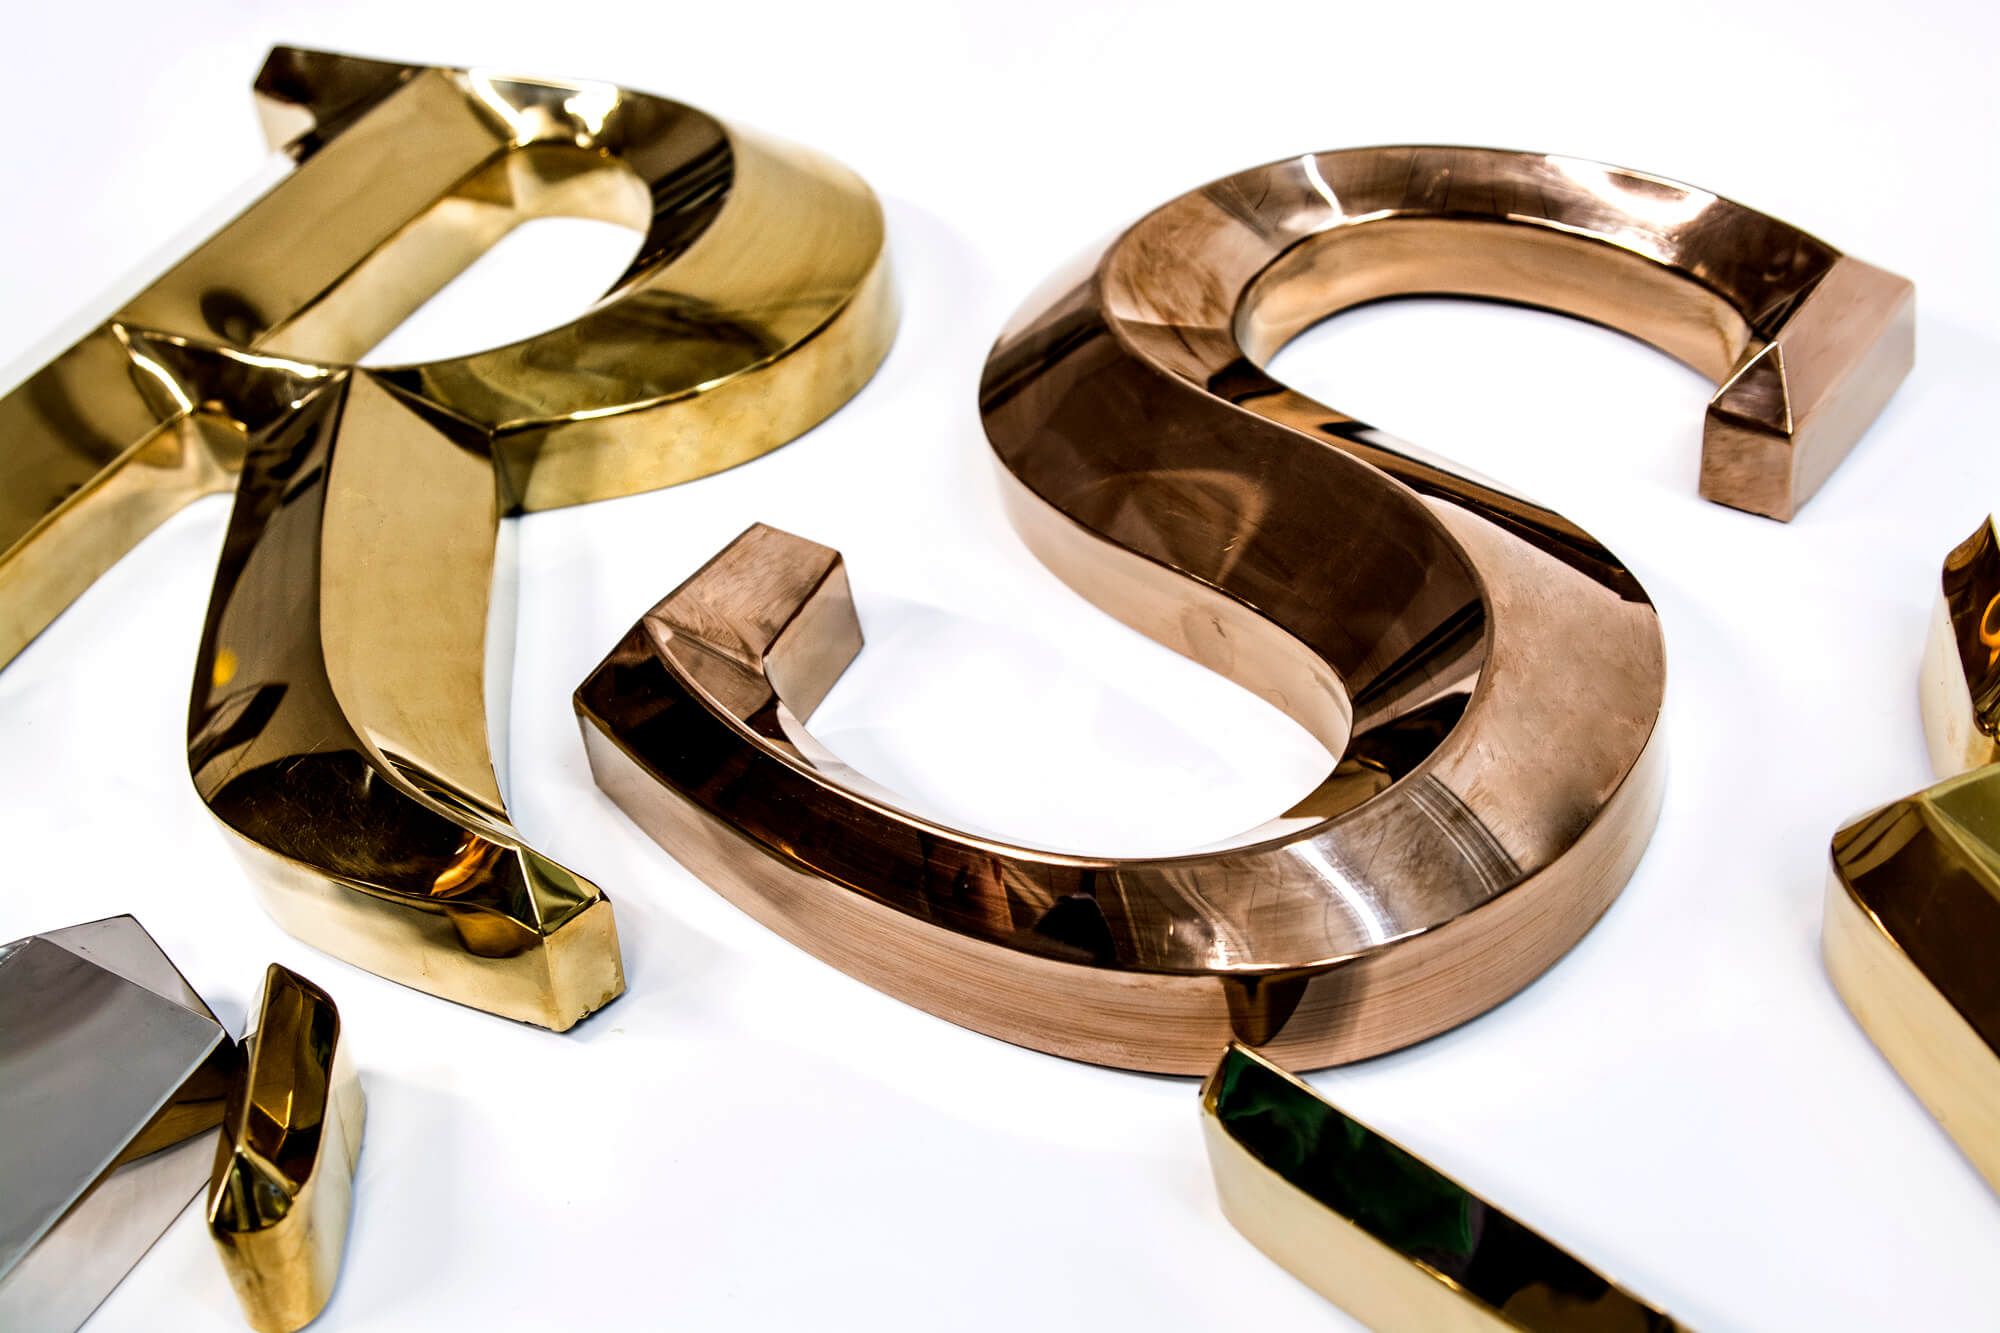 Prismatische letters - Gouden prismatische letters van metaal